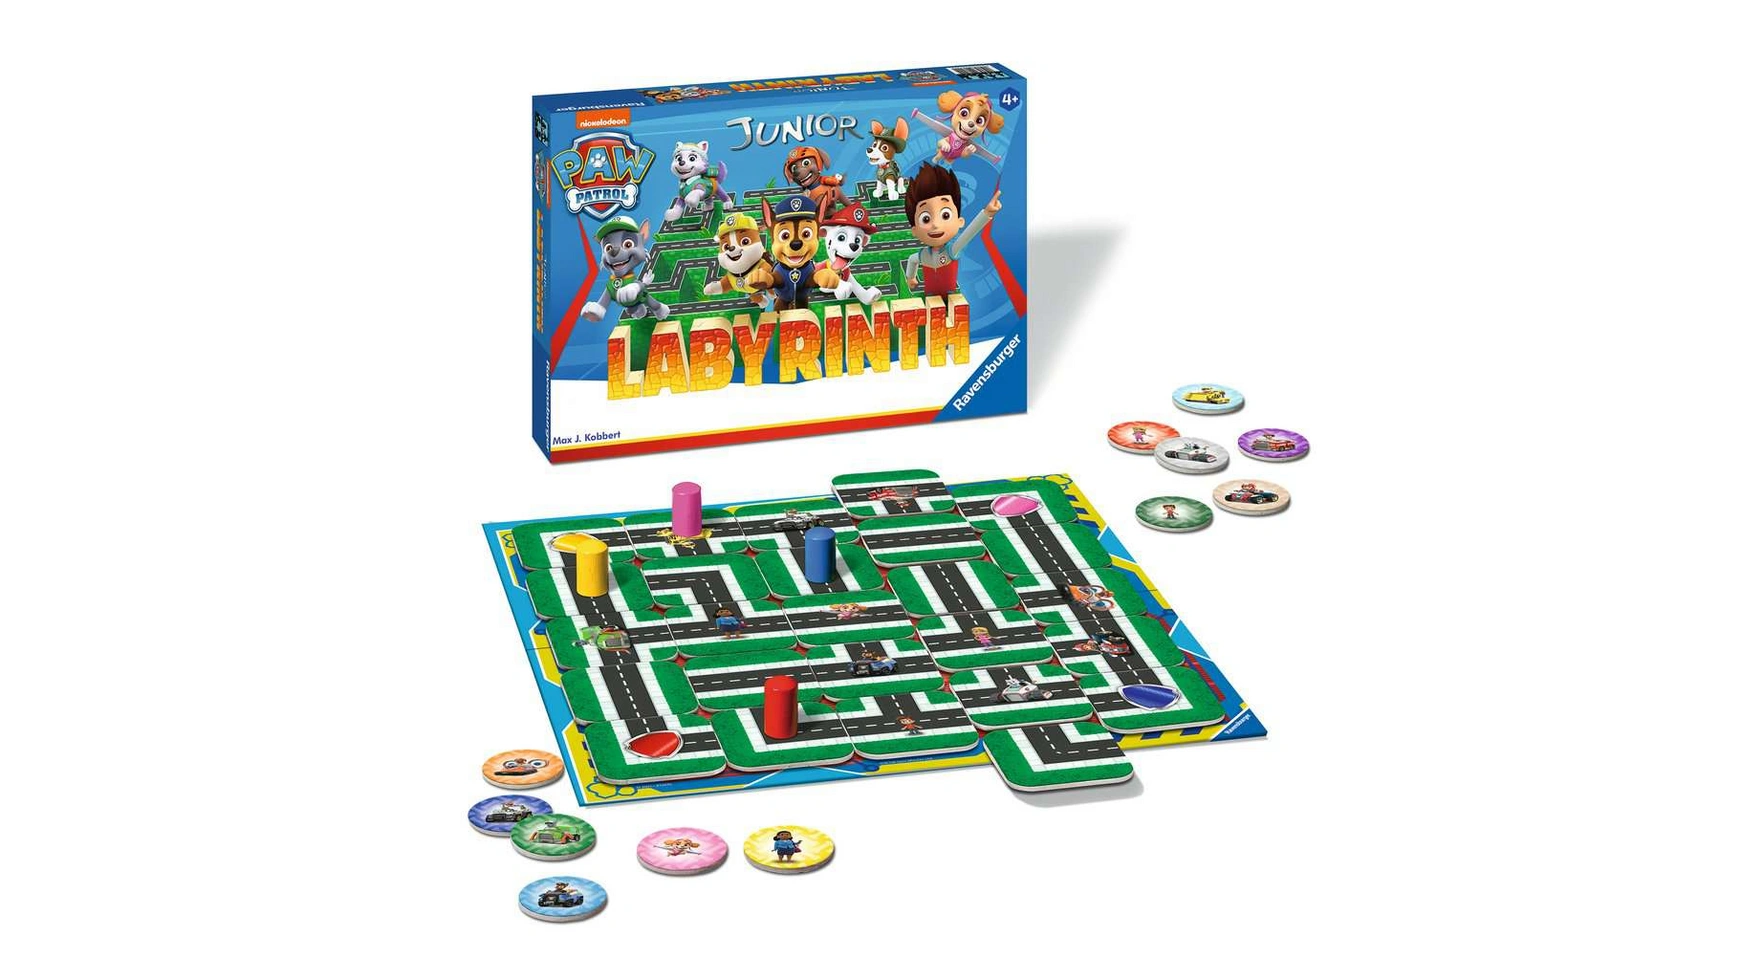 Ravensburger Spiele Paw Patrol Junior Labyrinth, известная настольная игра от Ravensburger в детской версии настольная игра ходилка лабиринт фараона